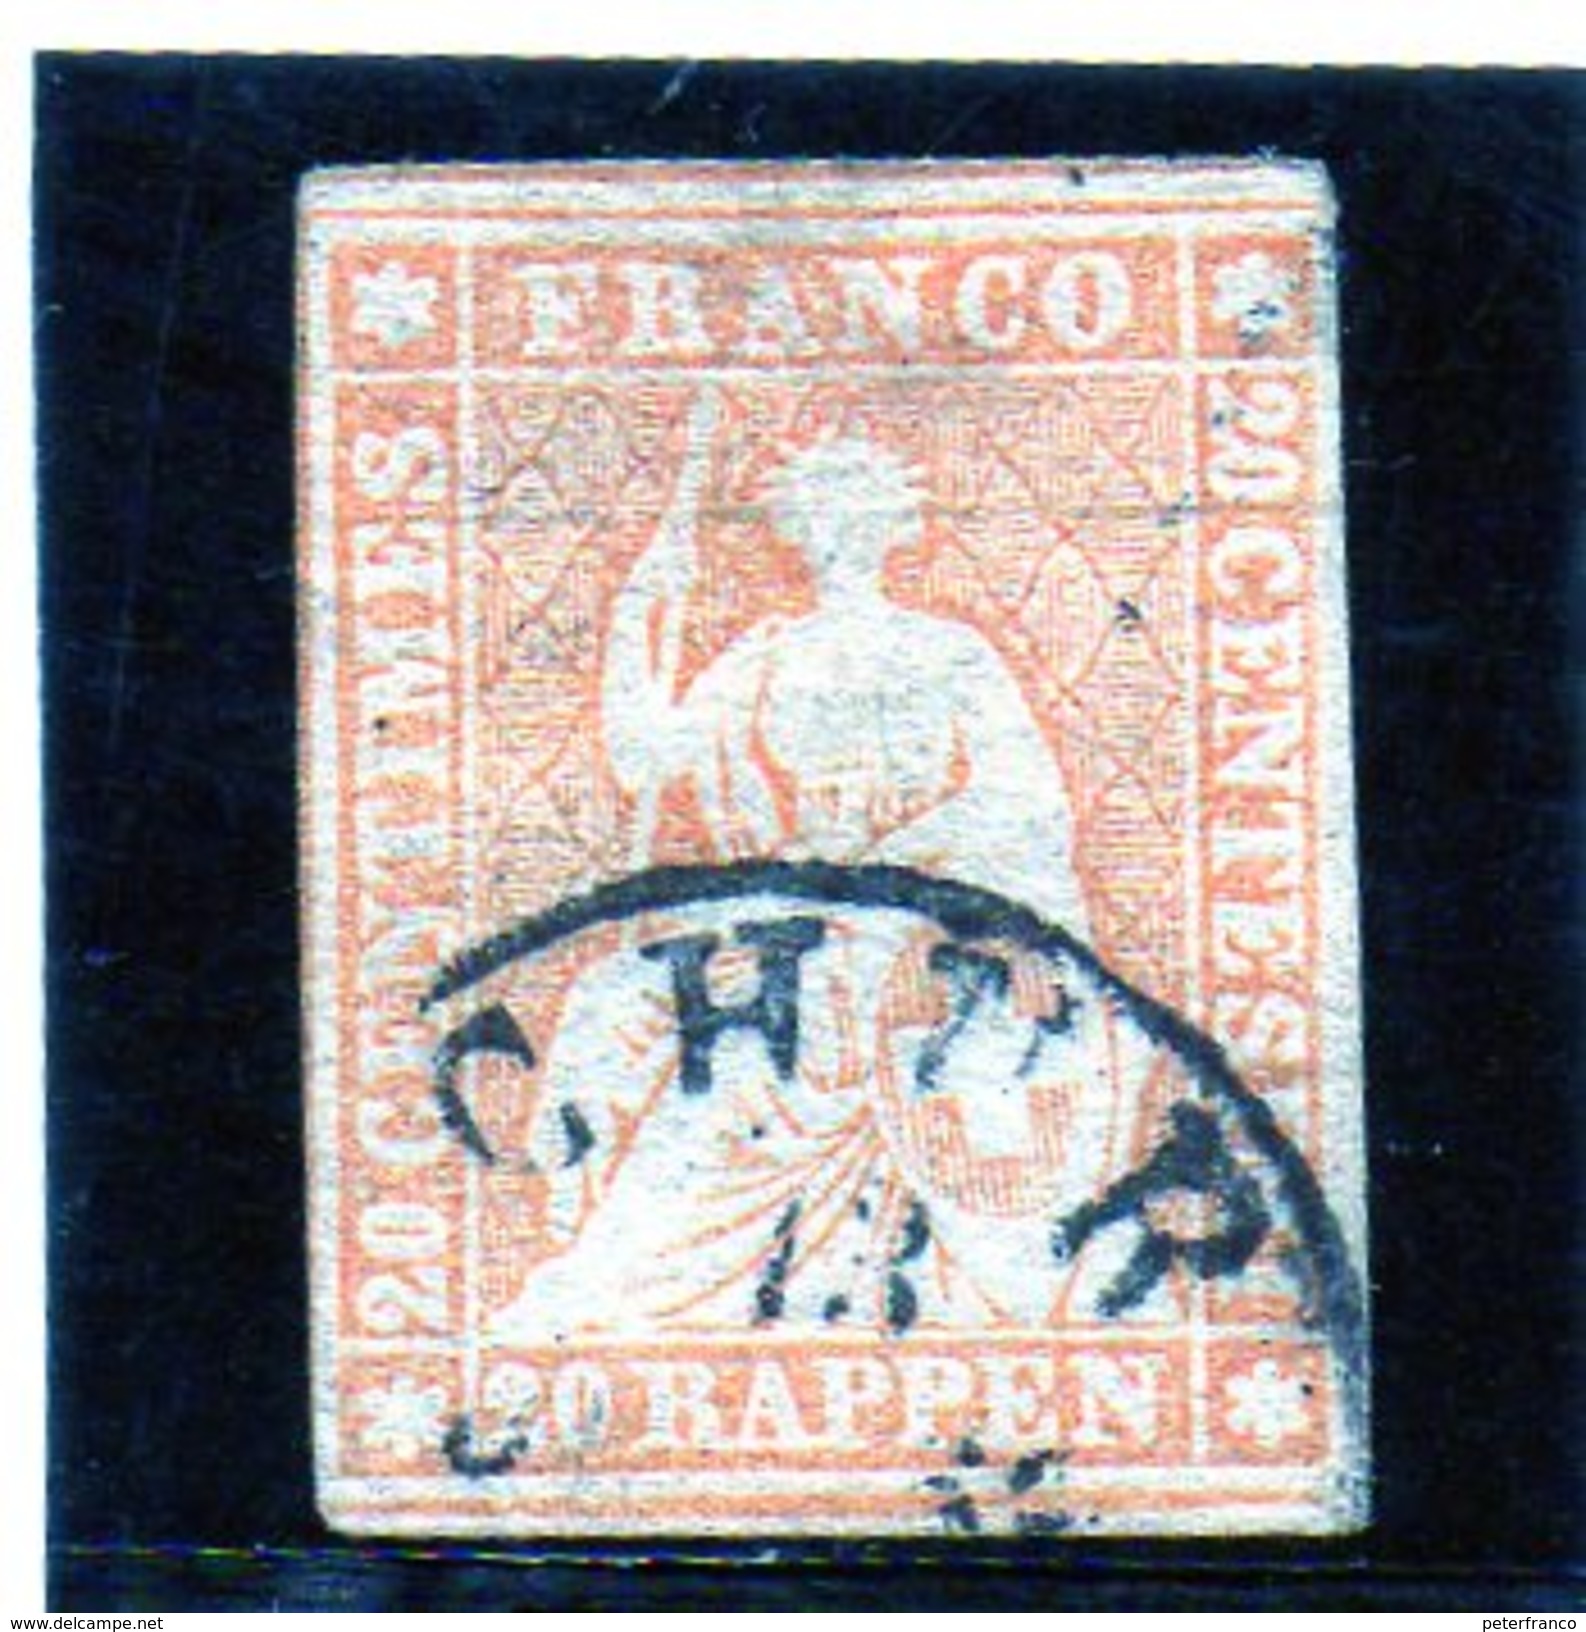 B - Svizzera 1857 - Elvezia Seduta - 1843-1852 Federal & Cantonal Stamps